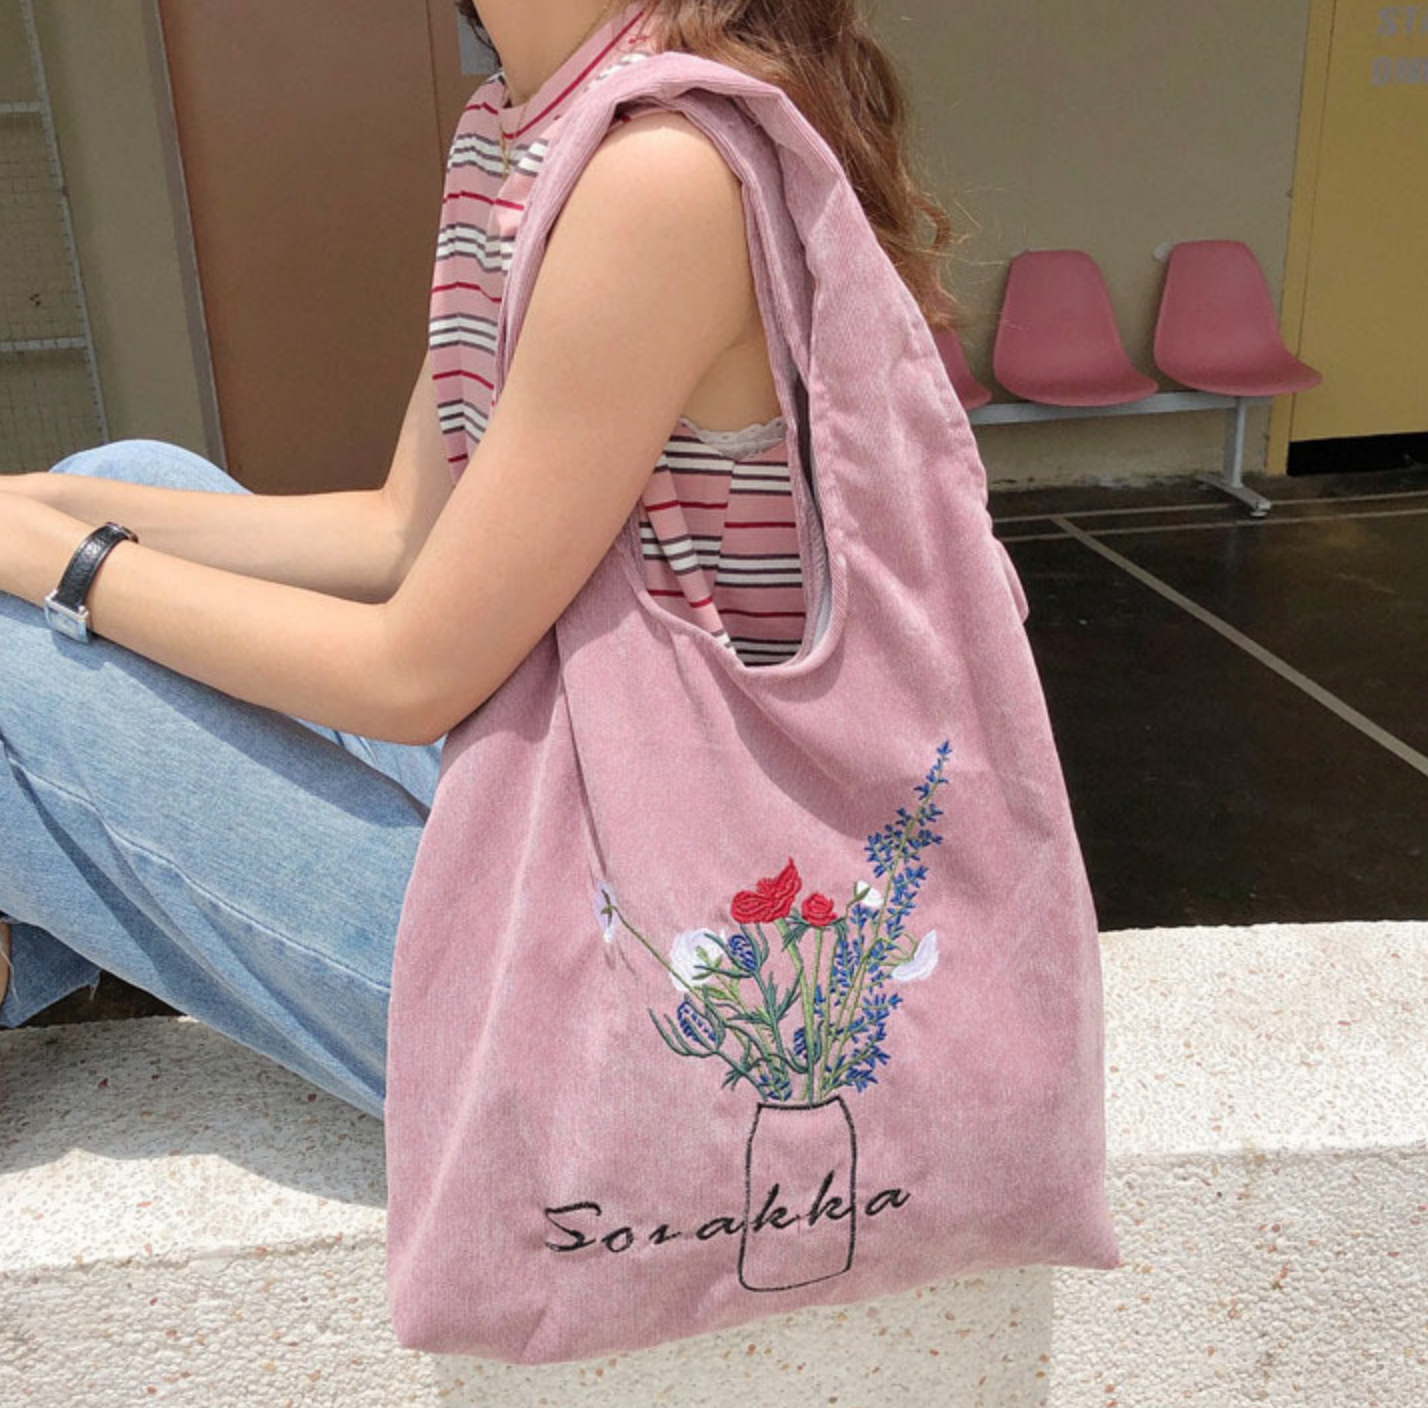 Corduroy Shoulder Bag with Floral Vase Illustration